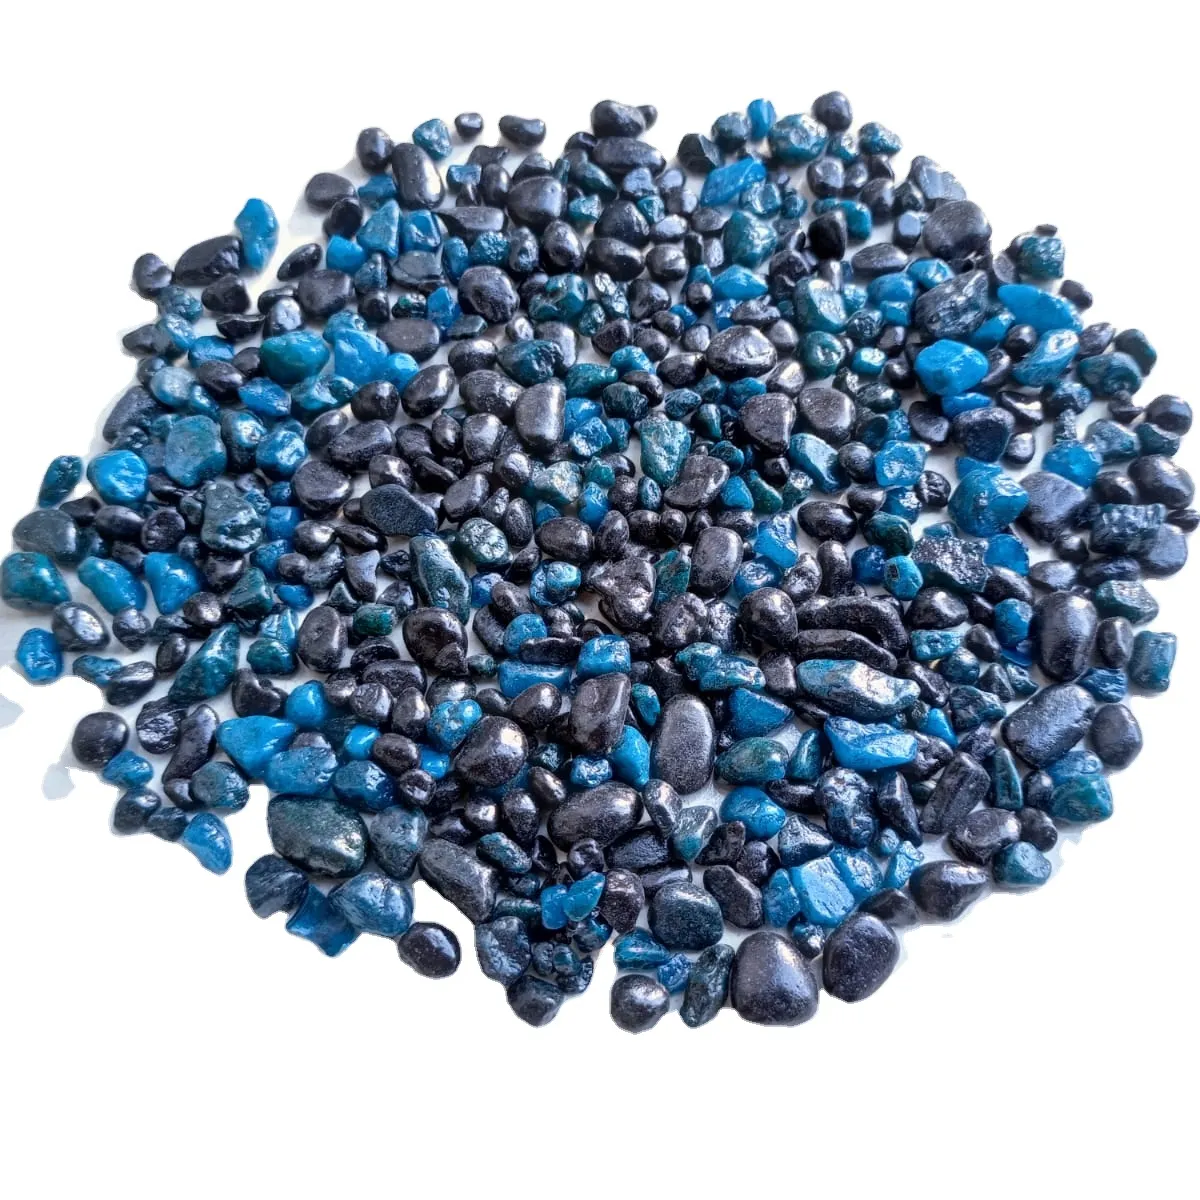 Gama clásica de productos Super redondos, guijarros de decoración con alto pulido, color azul, tamaño pequeño, 3-6mm